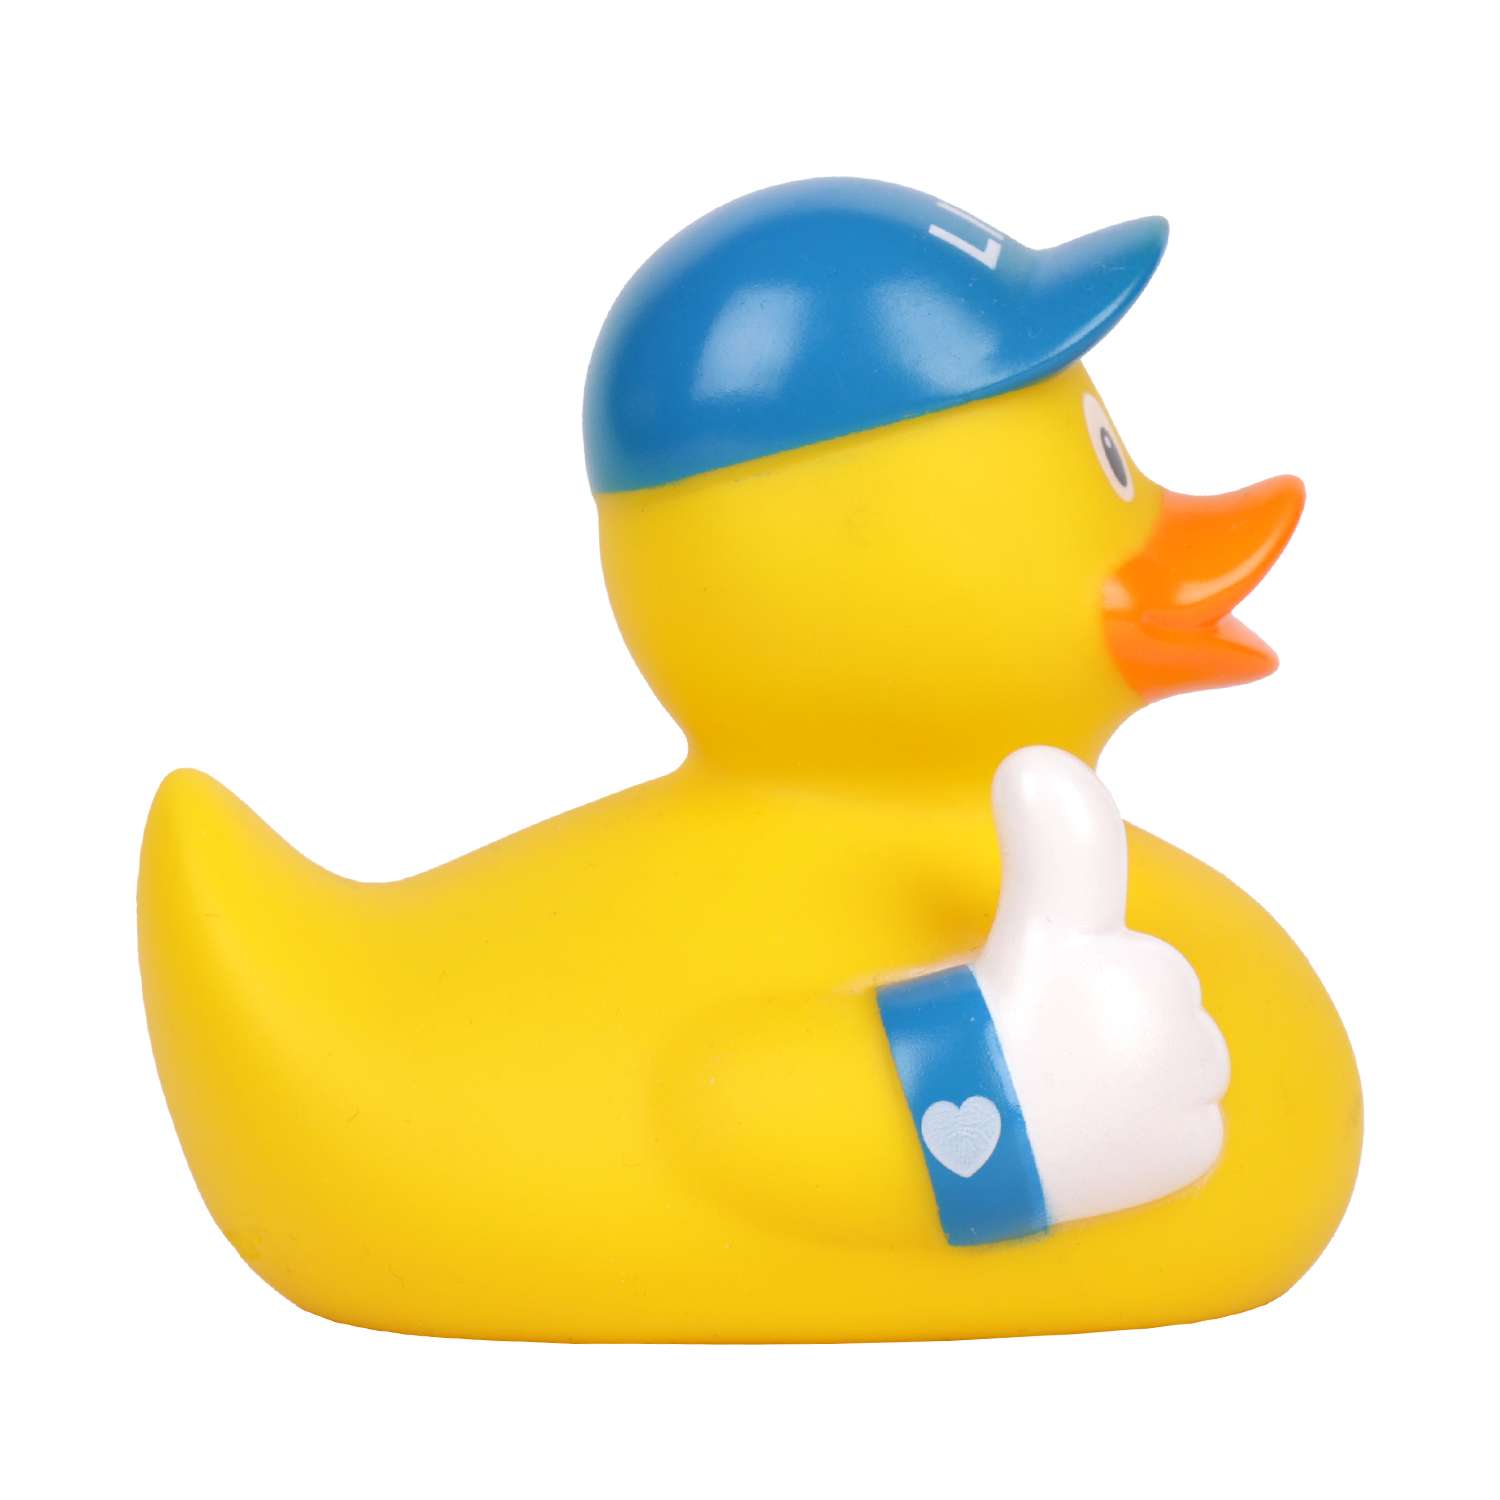 Игрушка для ванны сувенир Funny ducks Like уточка 1312 - фото 3